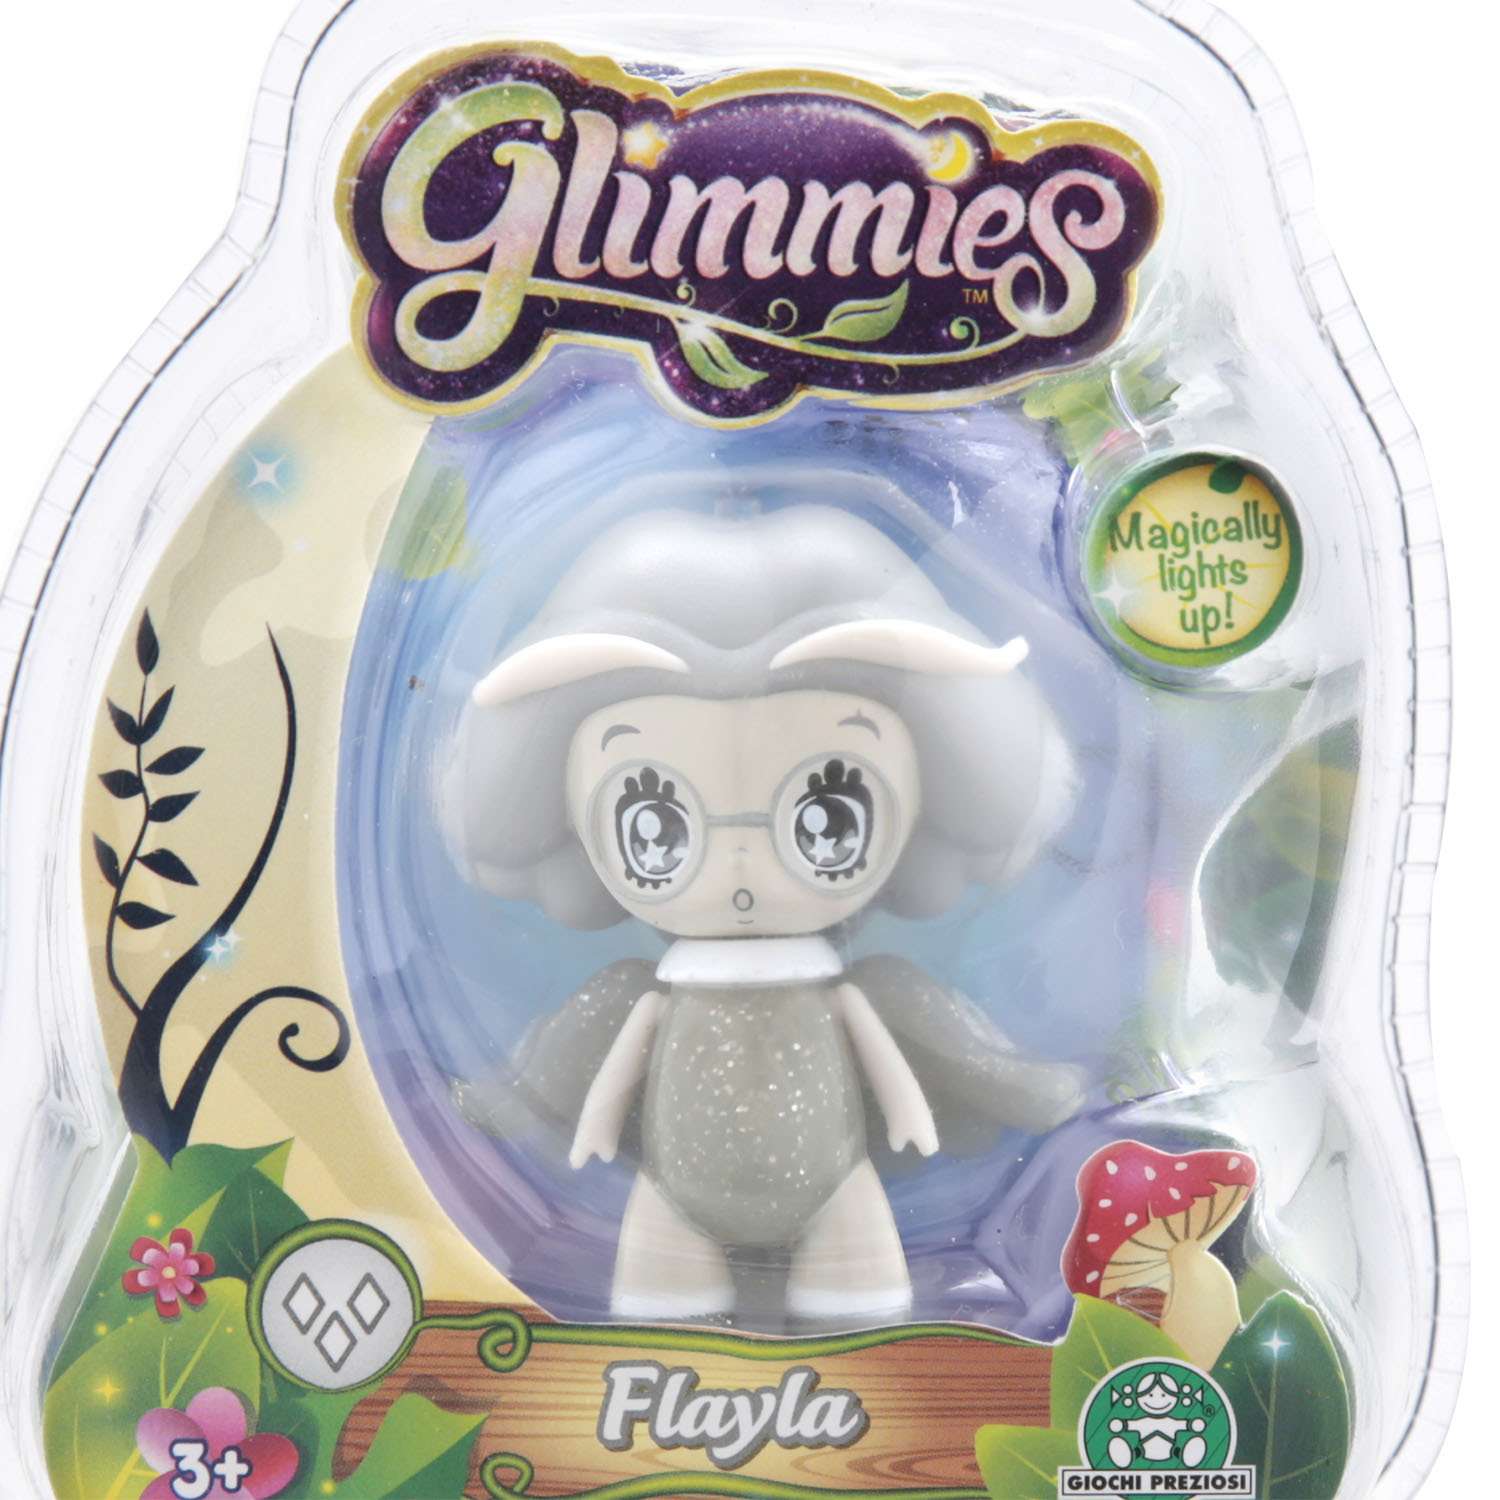 Кукла Glimmies Flayla в блистере GLM00110-4 - фото 4